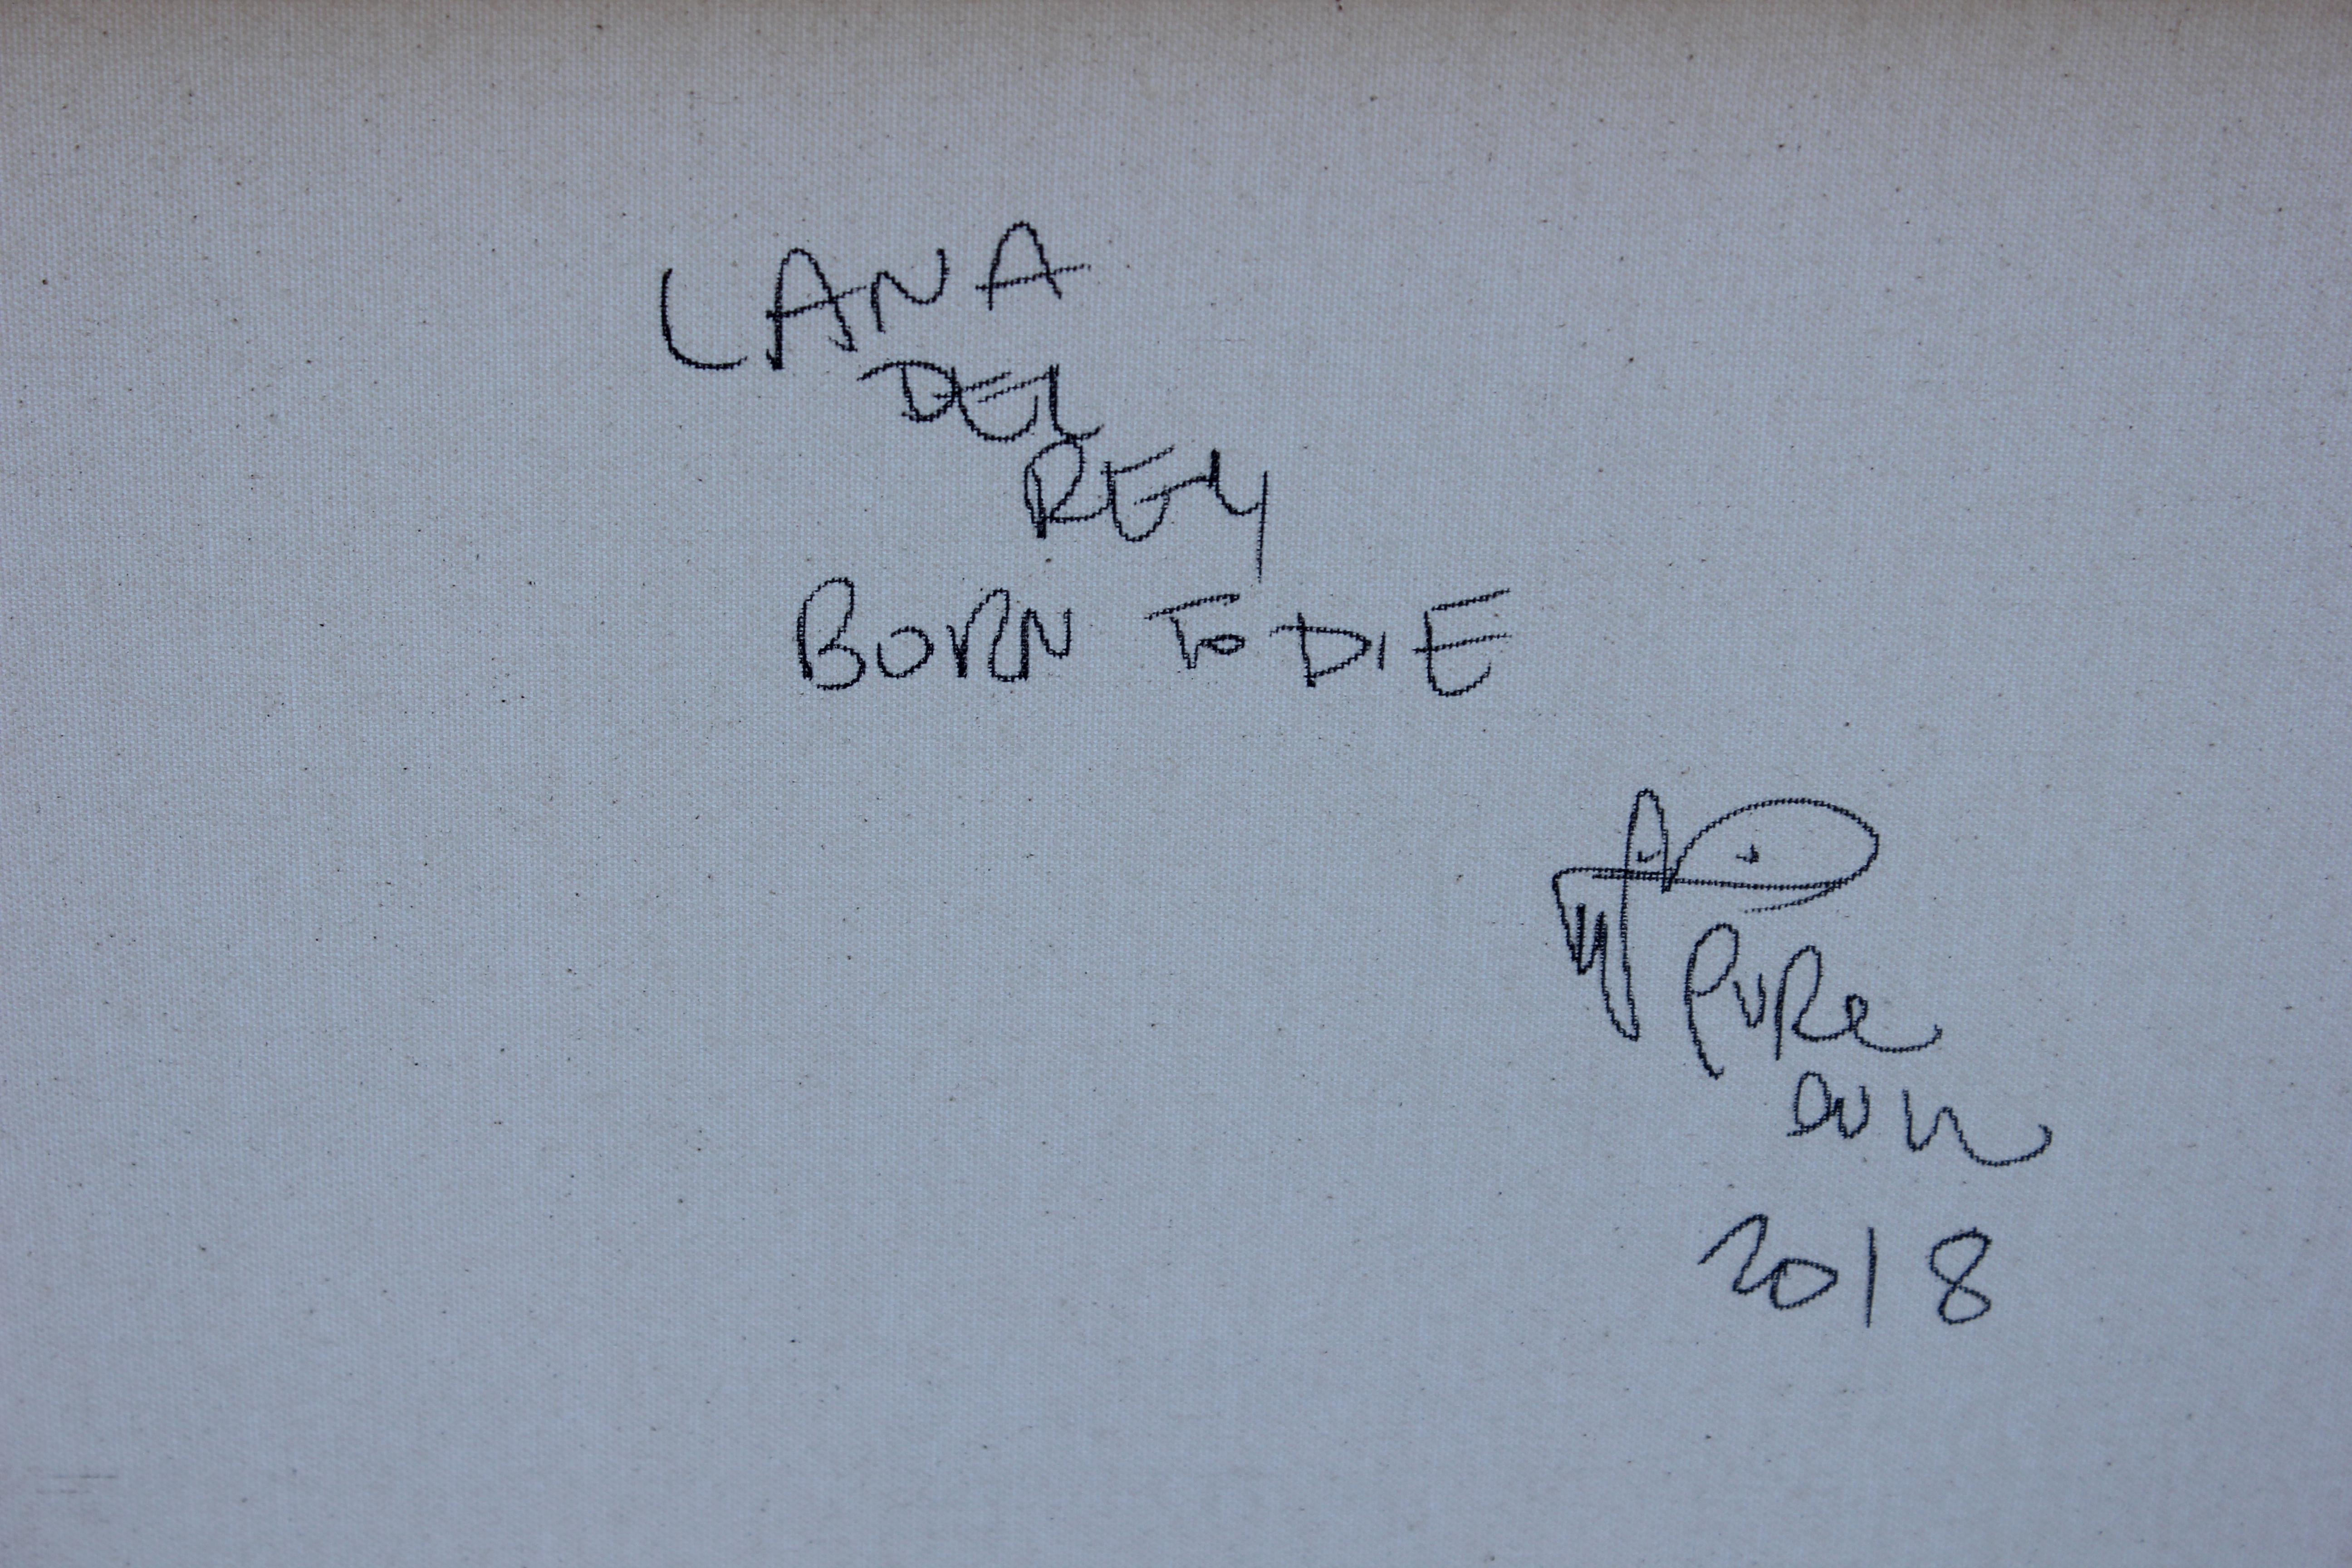 Wunderschönes Porträt von Lana Del Rey mit schwarzer Träne des Pop-Künstlers Pure Evil, datiert 2018 und gemalt mit Acryl und Sprühfarbe. Rückseitig signiert, betitelt und datiert.

Biographie des Künstlers:
Pure Evil ist das Pseudonym des